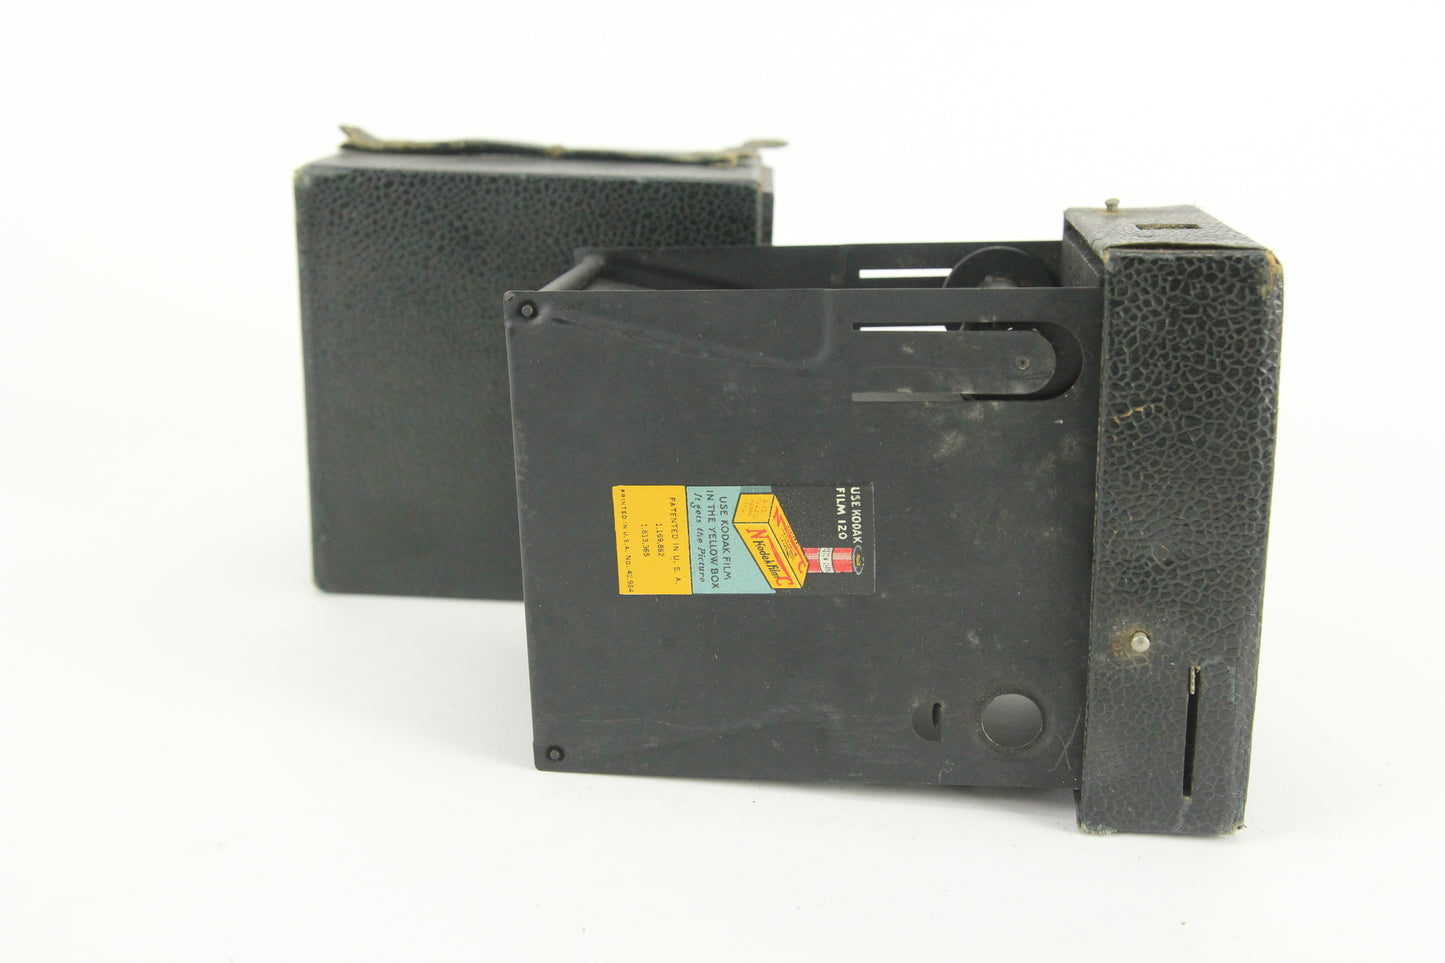 Eastman Kodak Rainbow Hawk-Eye No. 2 Model C Box Camera